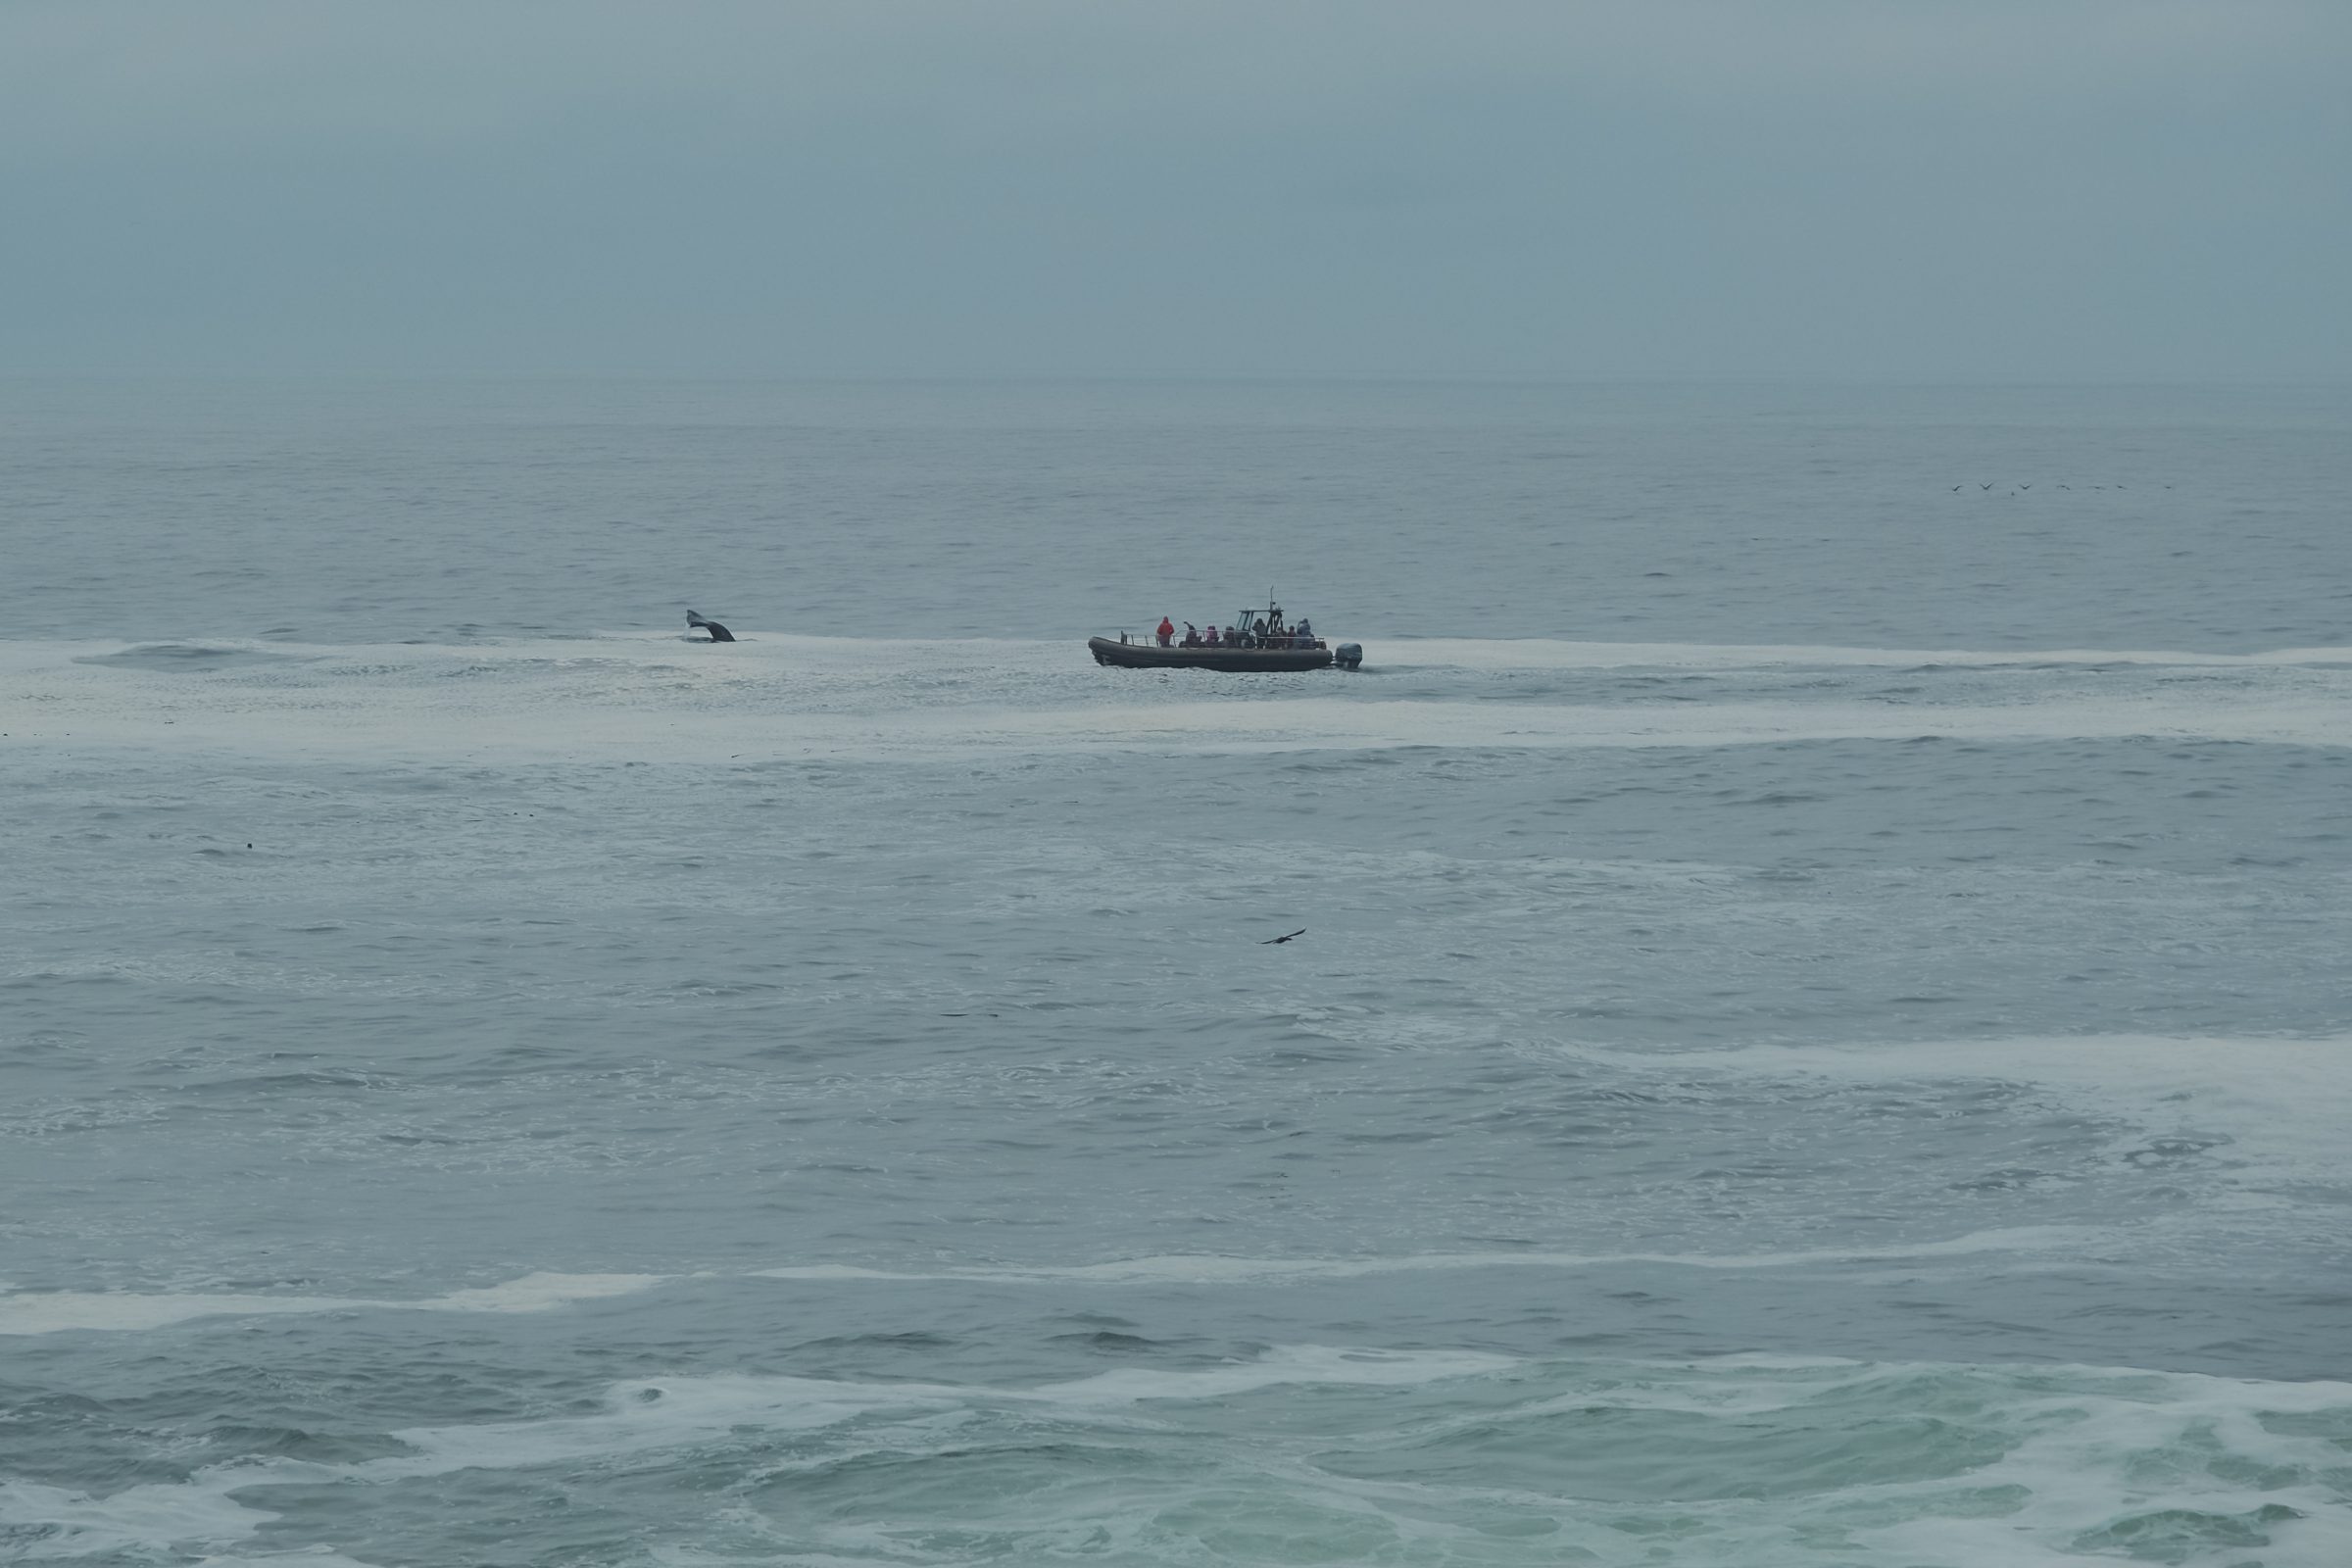 Vzdolž zahodne obale Amerike sem videl veliko čolnov z ogledov kitov